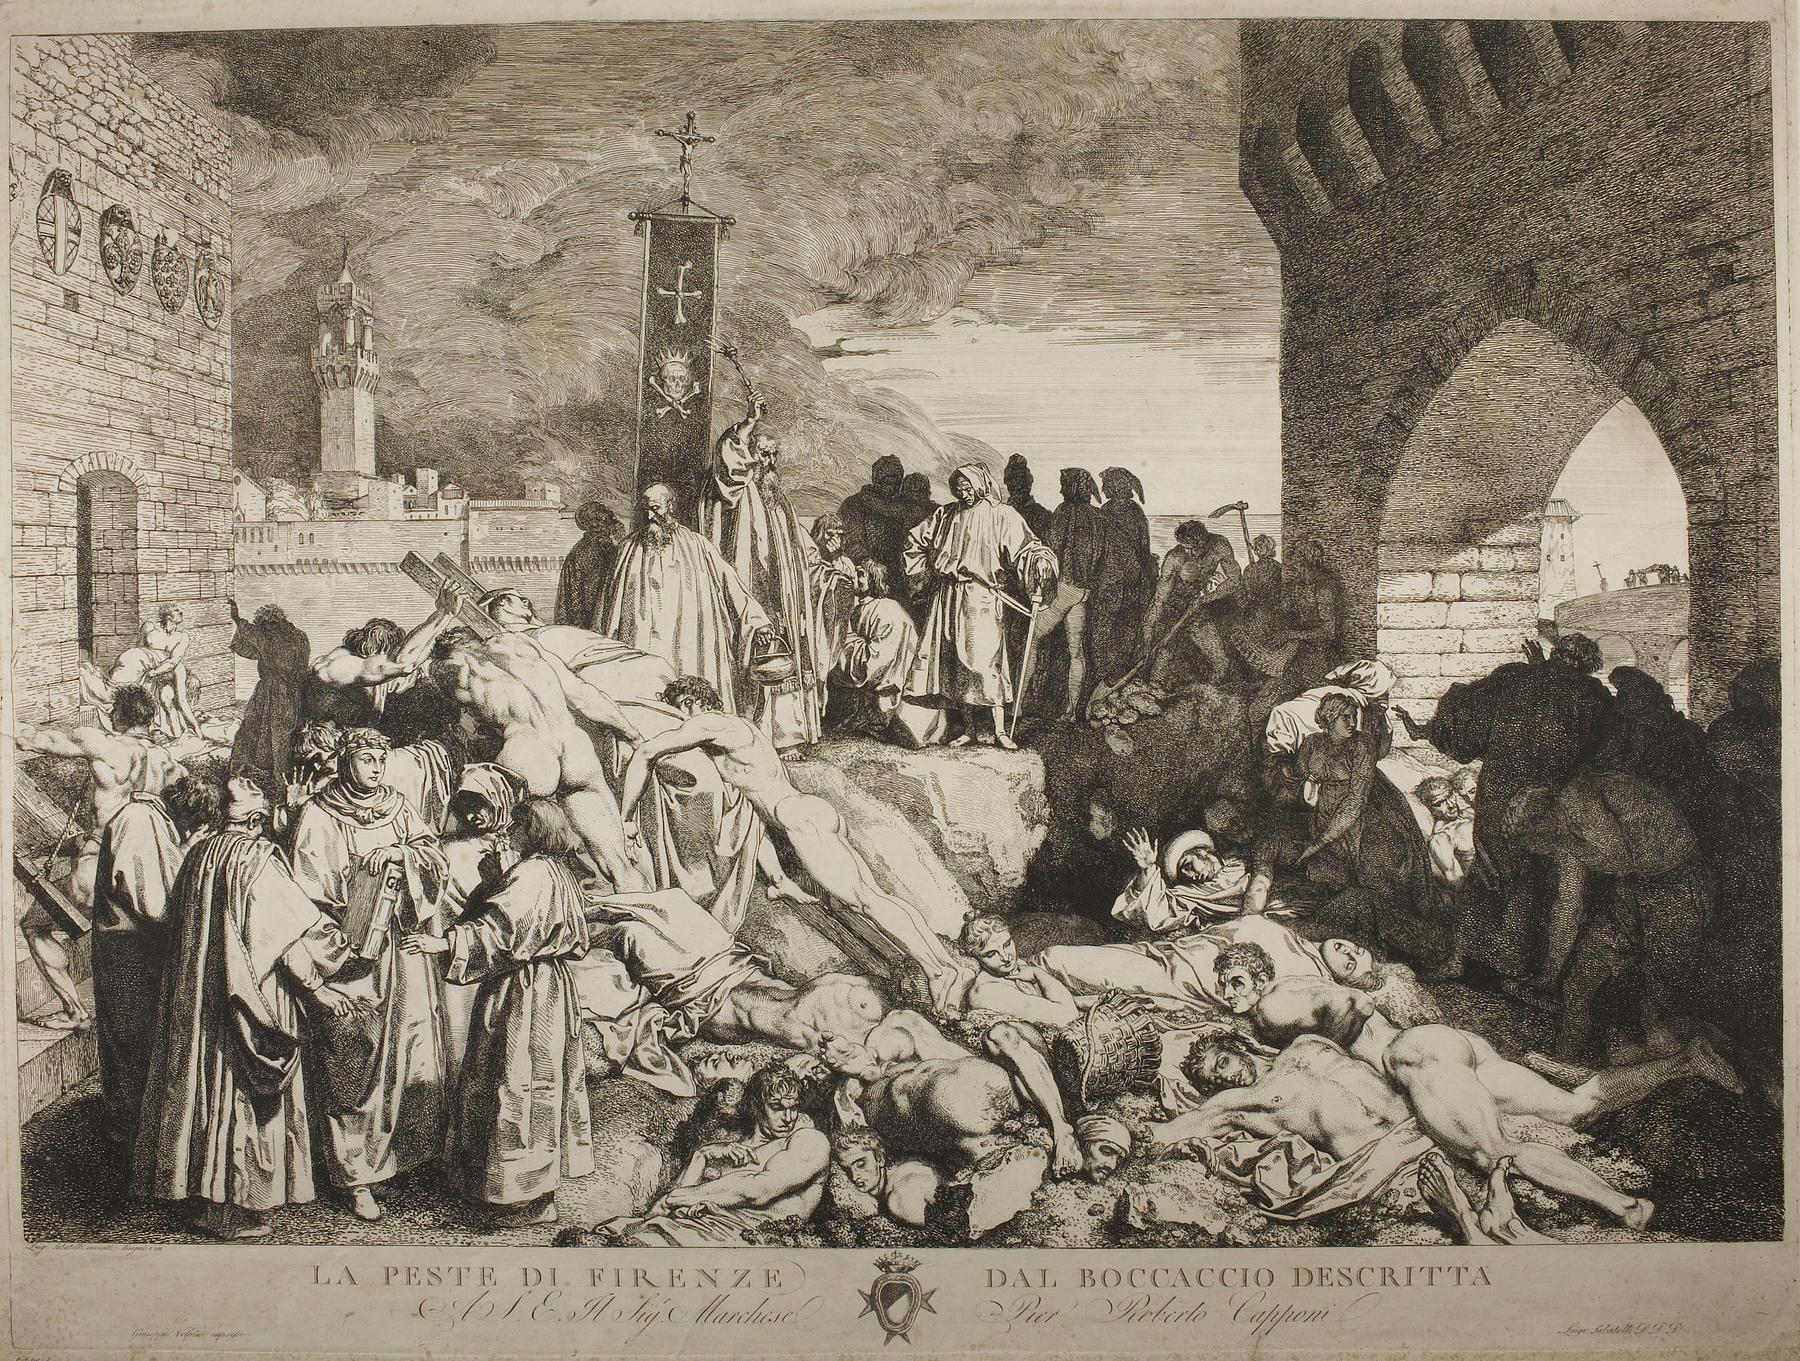 The Plague in Florence as described by Boccaccio, E1043